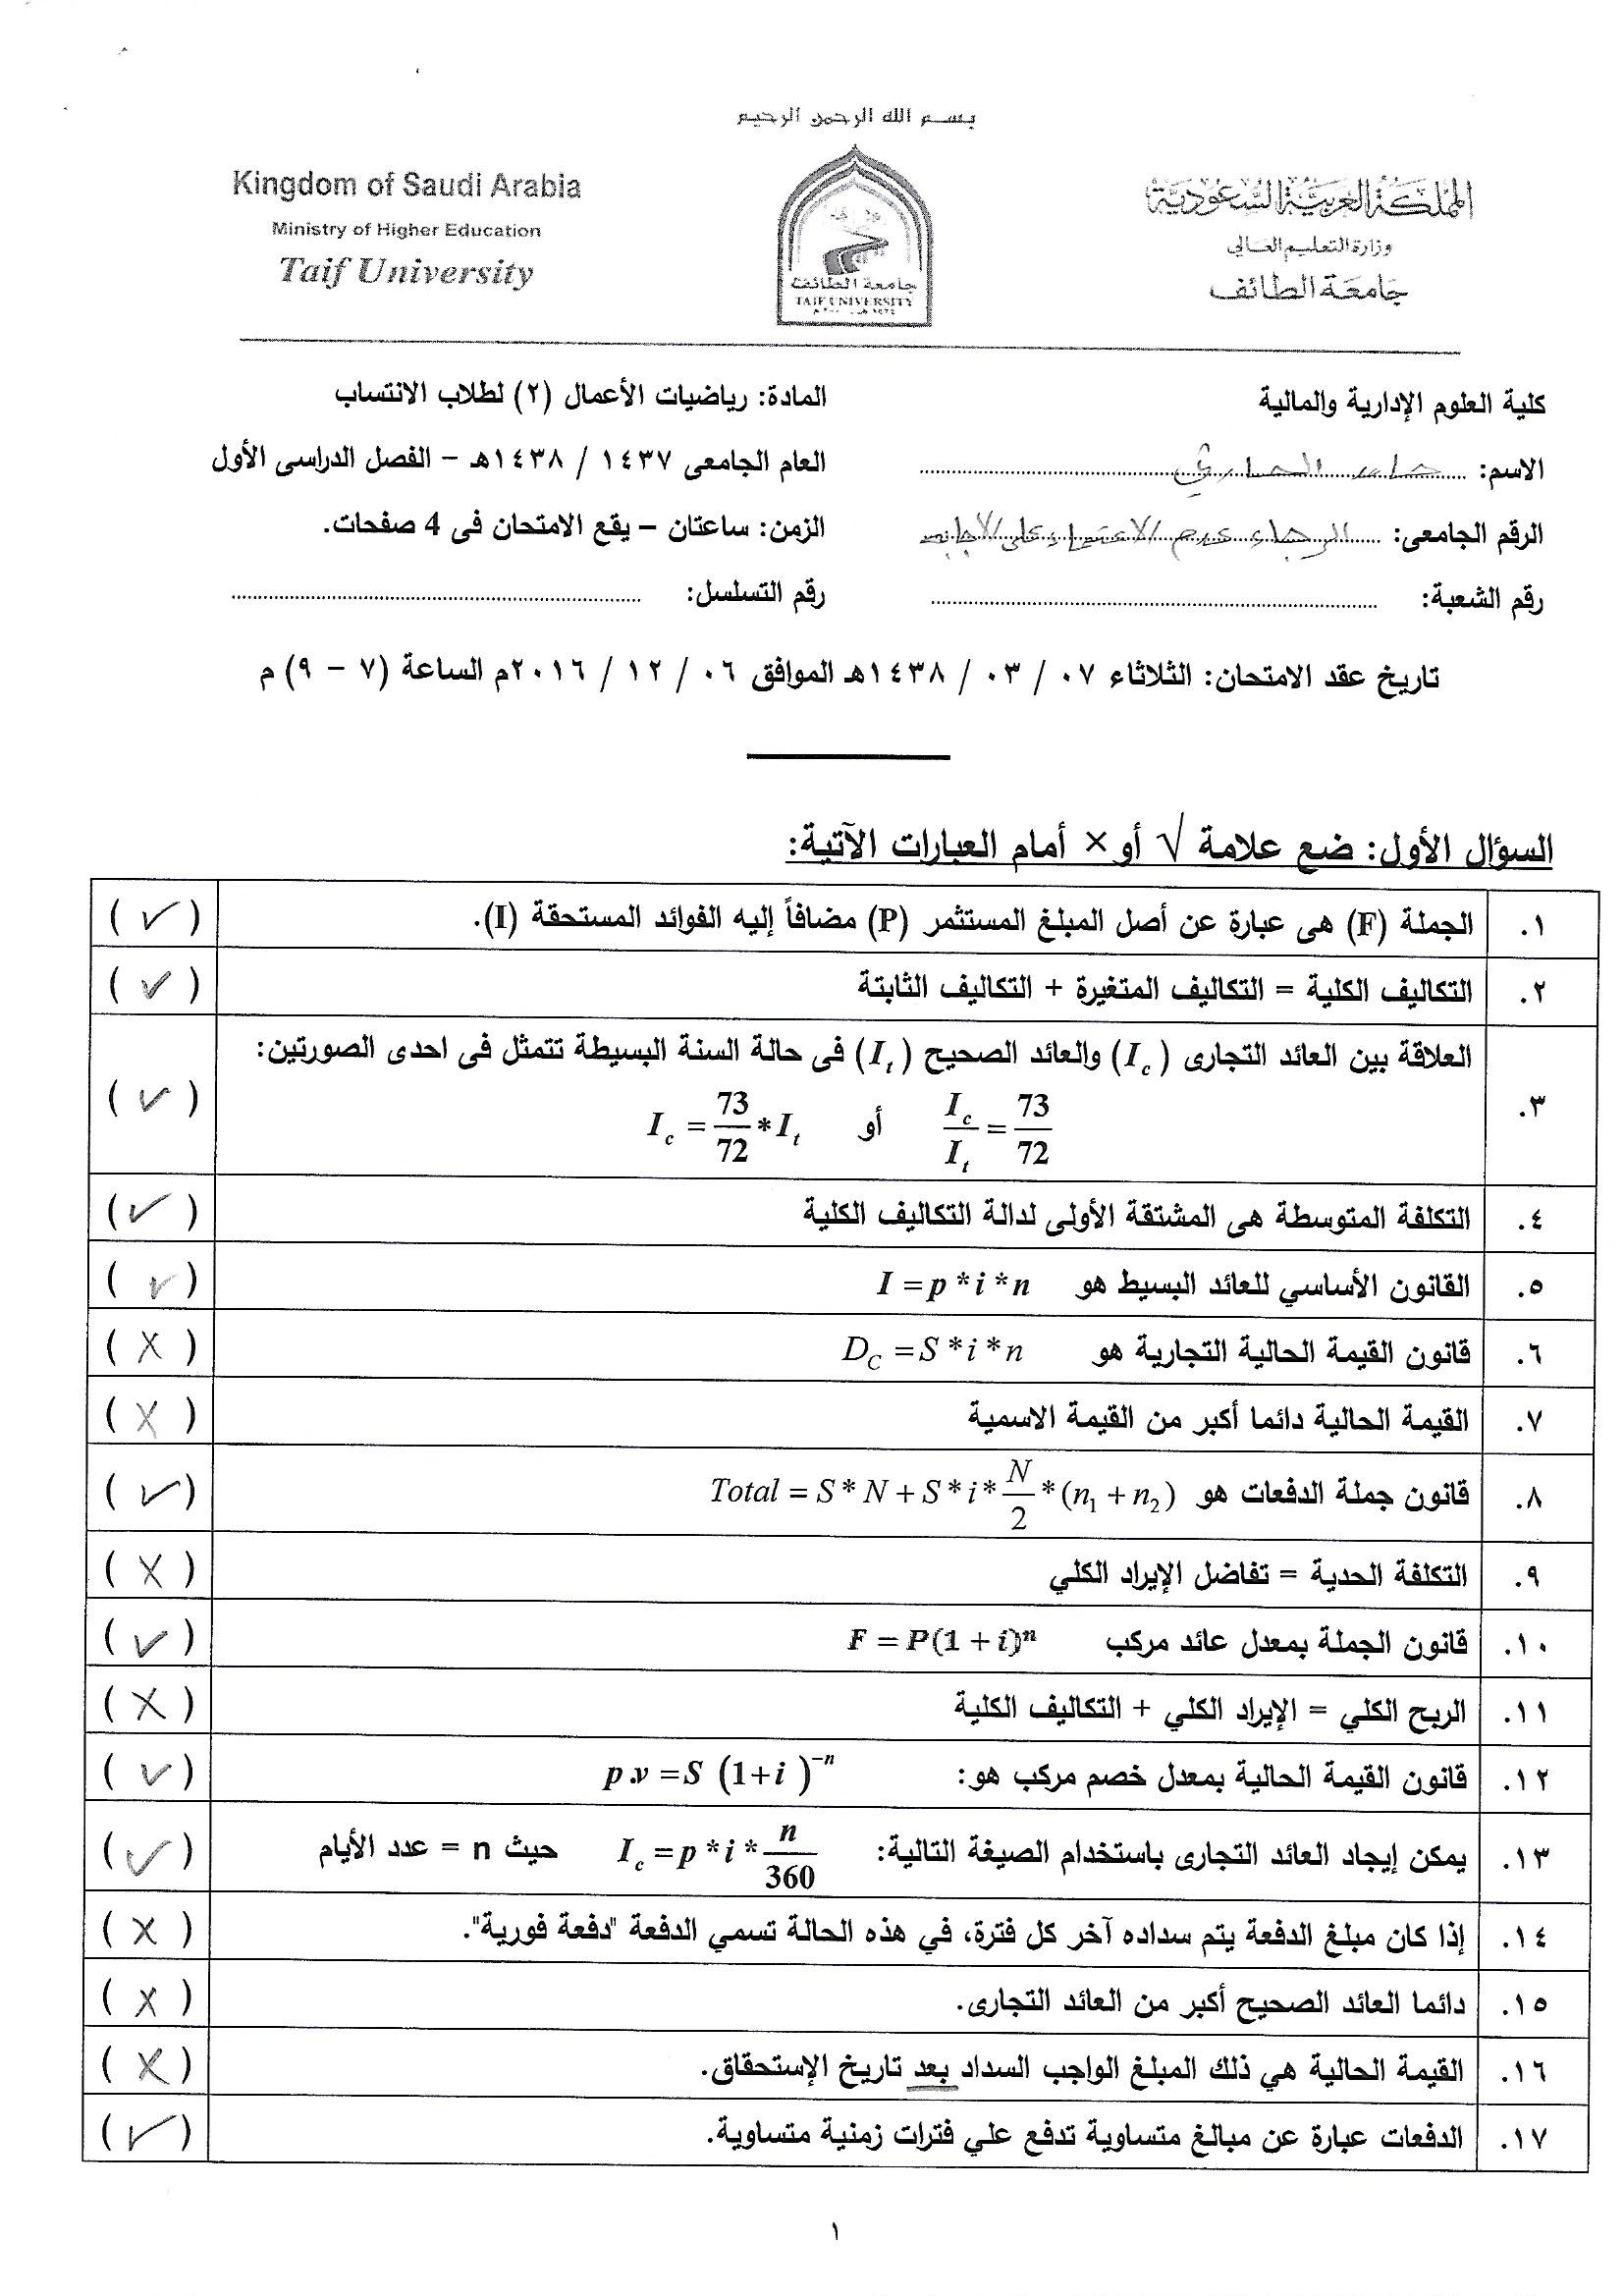 اختبار مادة رياضيات الأعمال 2 الفصل الاول 1438 انتساب مطور